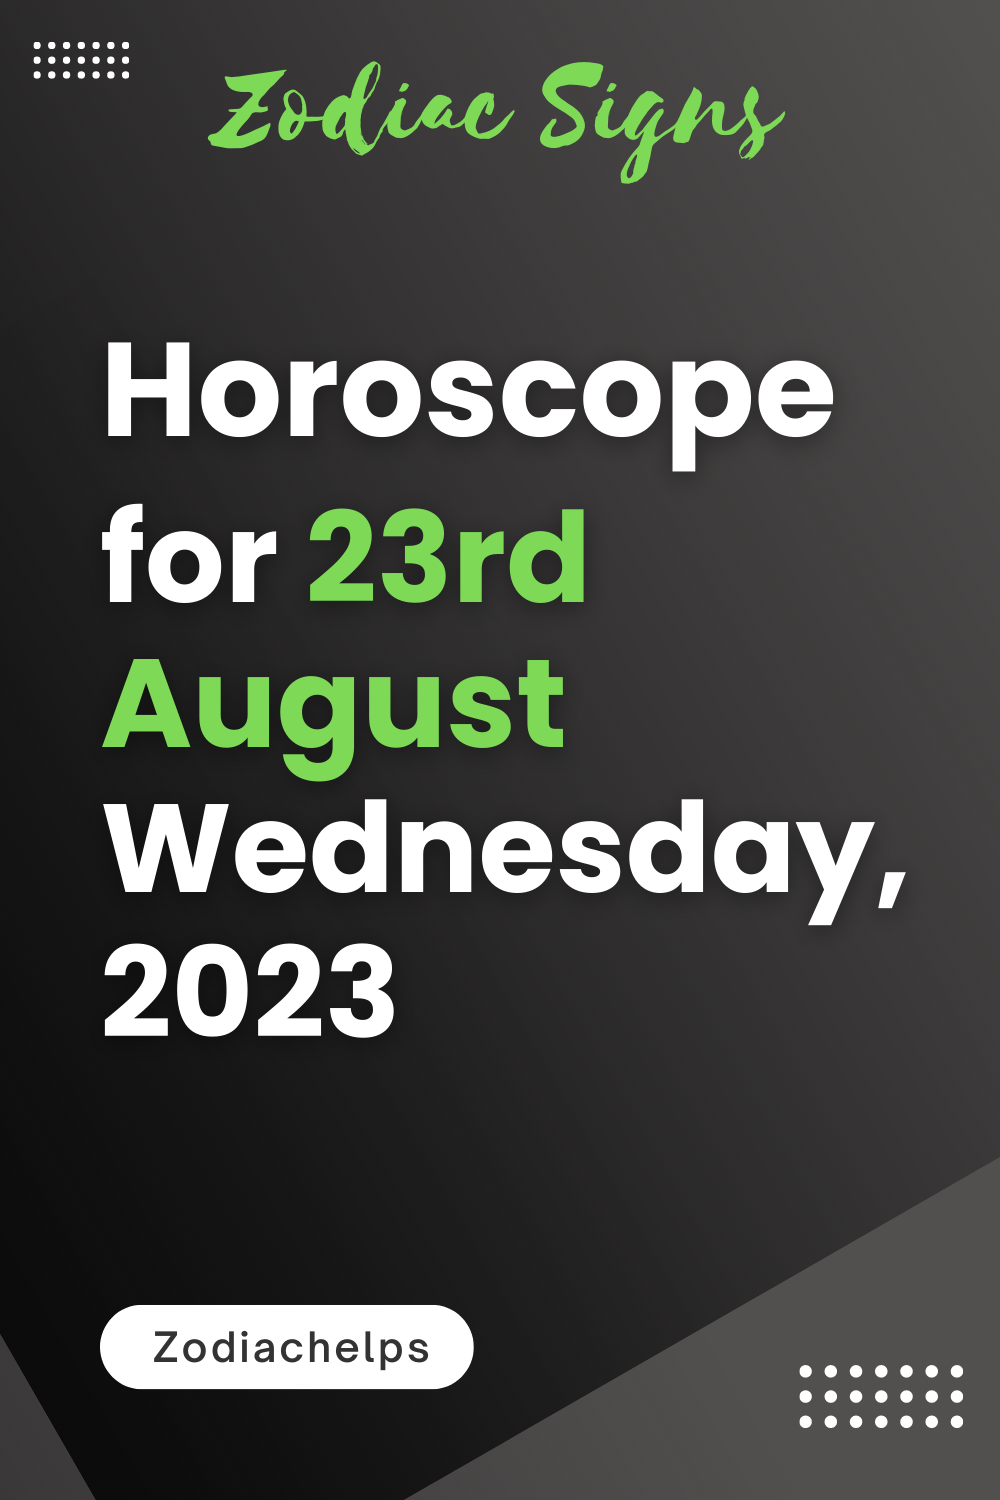 Horoscope for 23rd August Wednesday, 2023